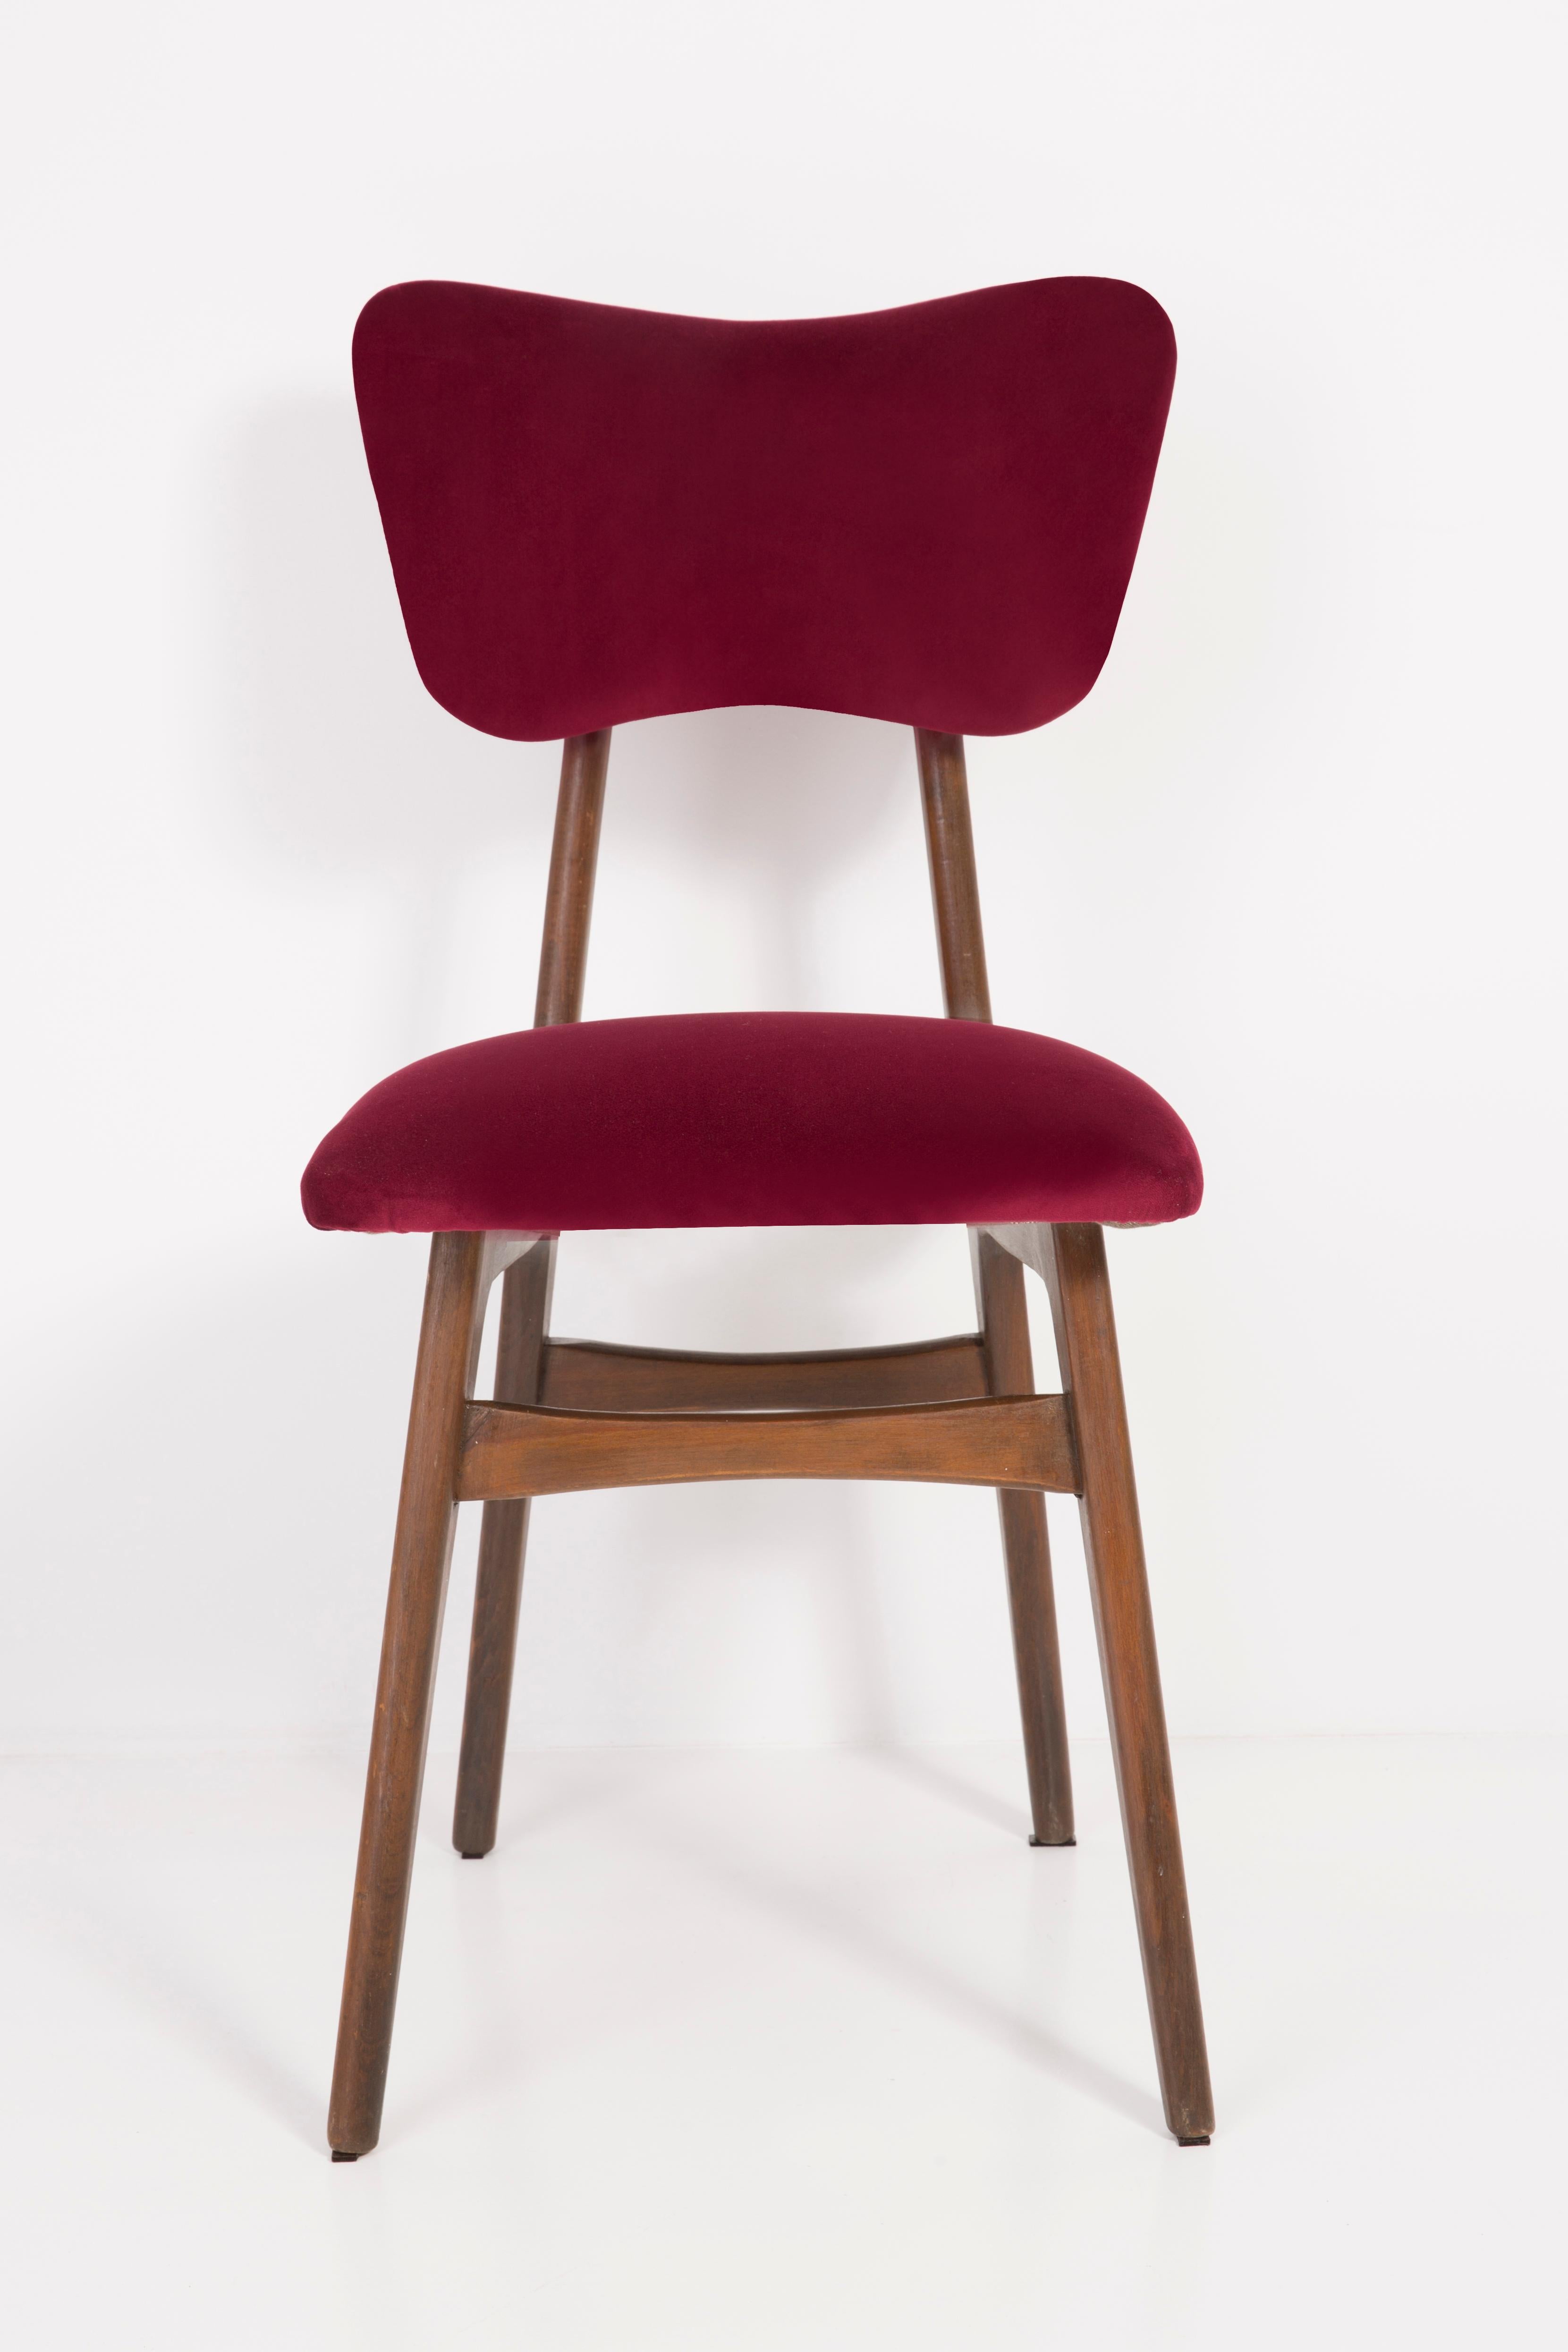 Chaise conçue par le professeur Rajmund Halas. Fabriqué en bois de hêtre. Le fauteuil a subi une rénovation complète de la tapisserie et les boiseries ont été rafraîchies. L'assise et le dossier sont habillés d'un tissu en velours rouge bordeaux,